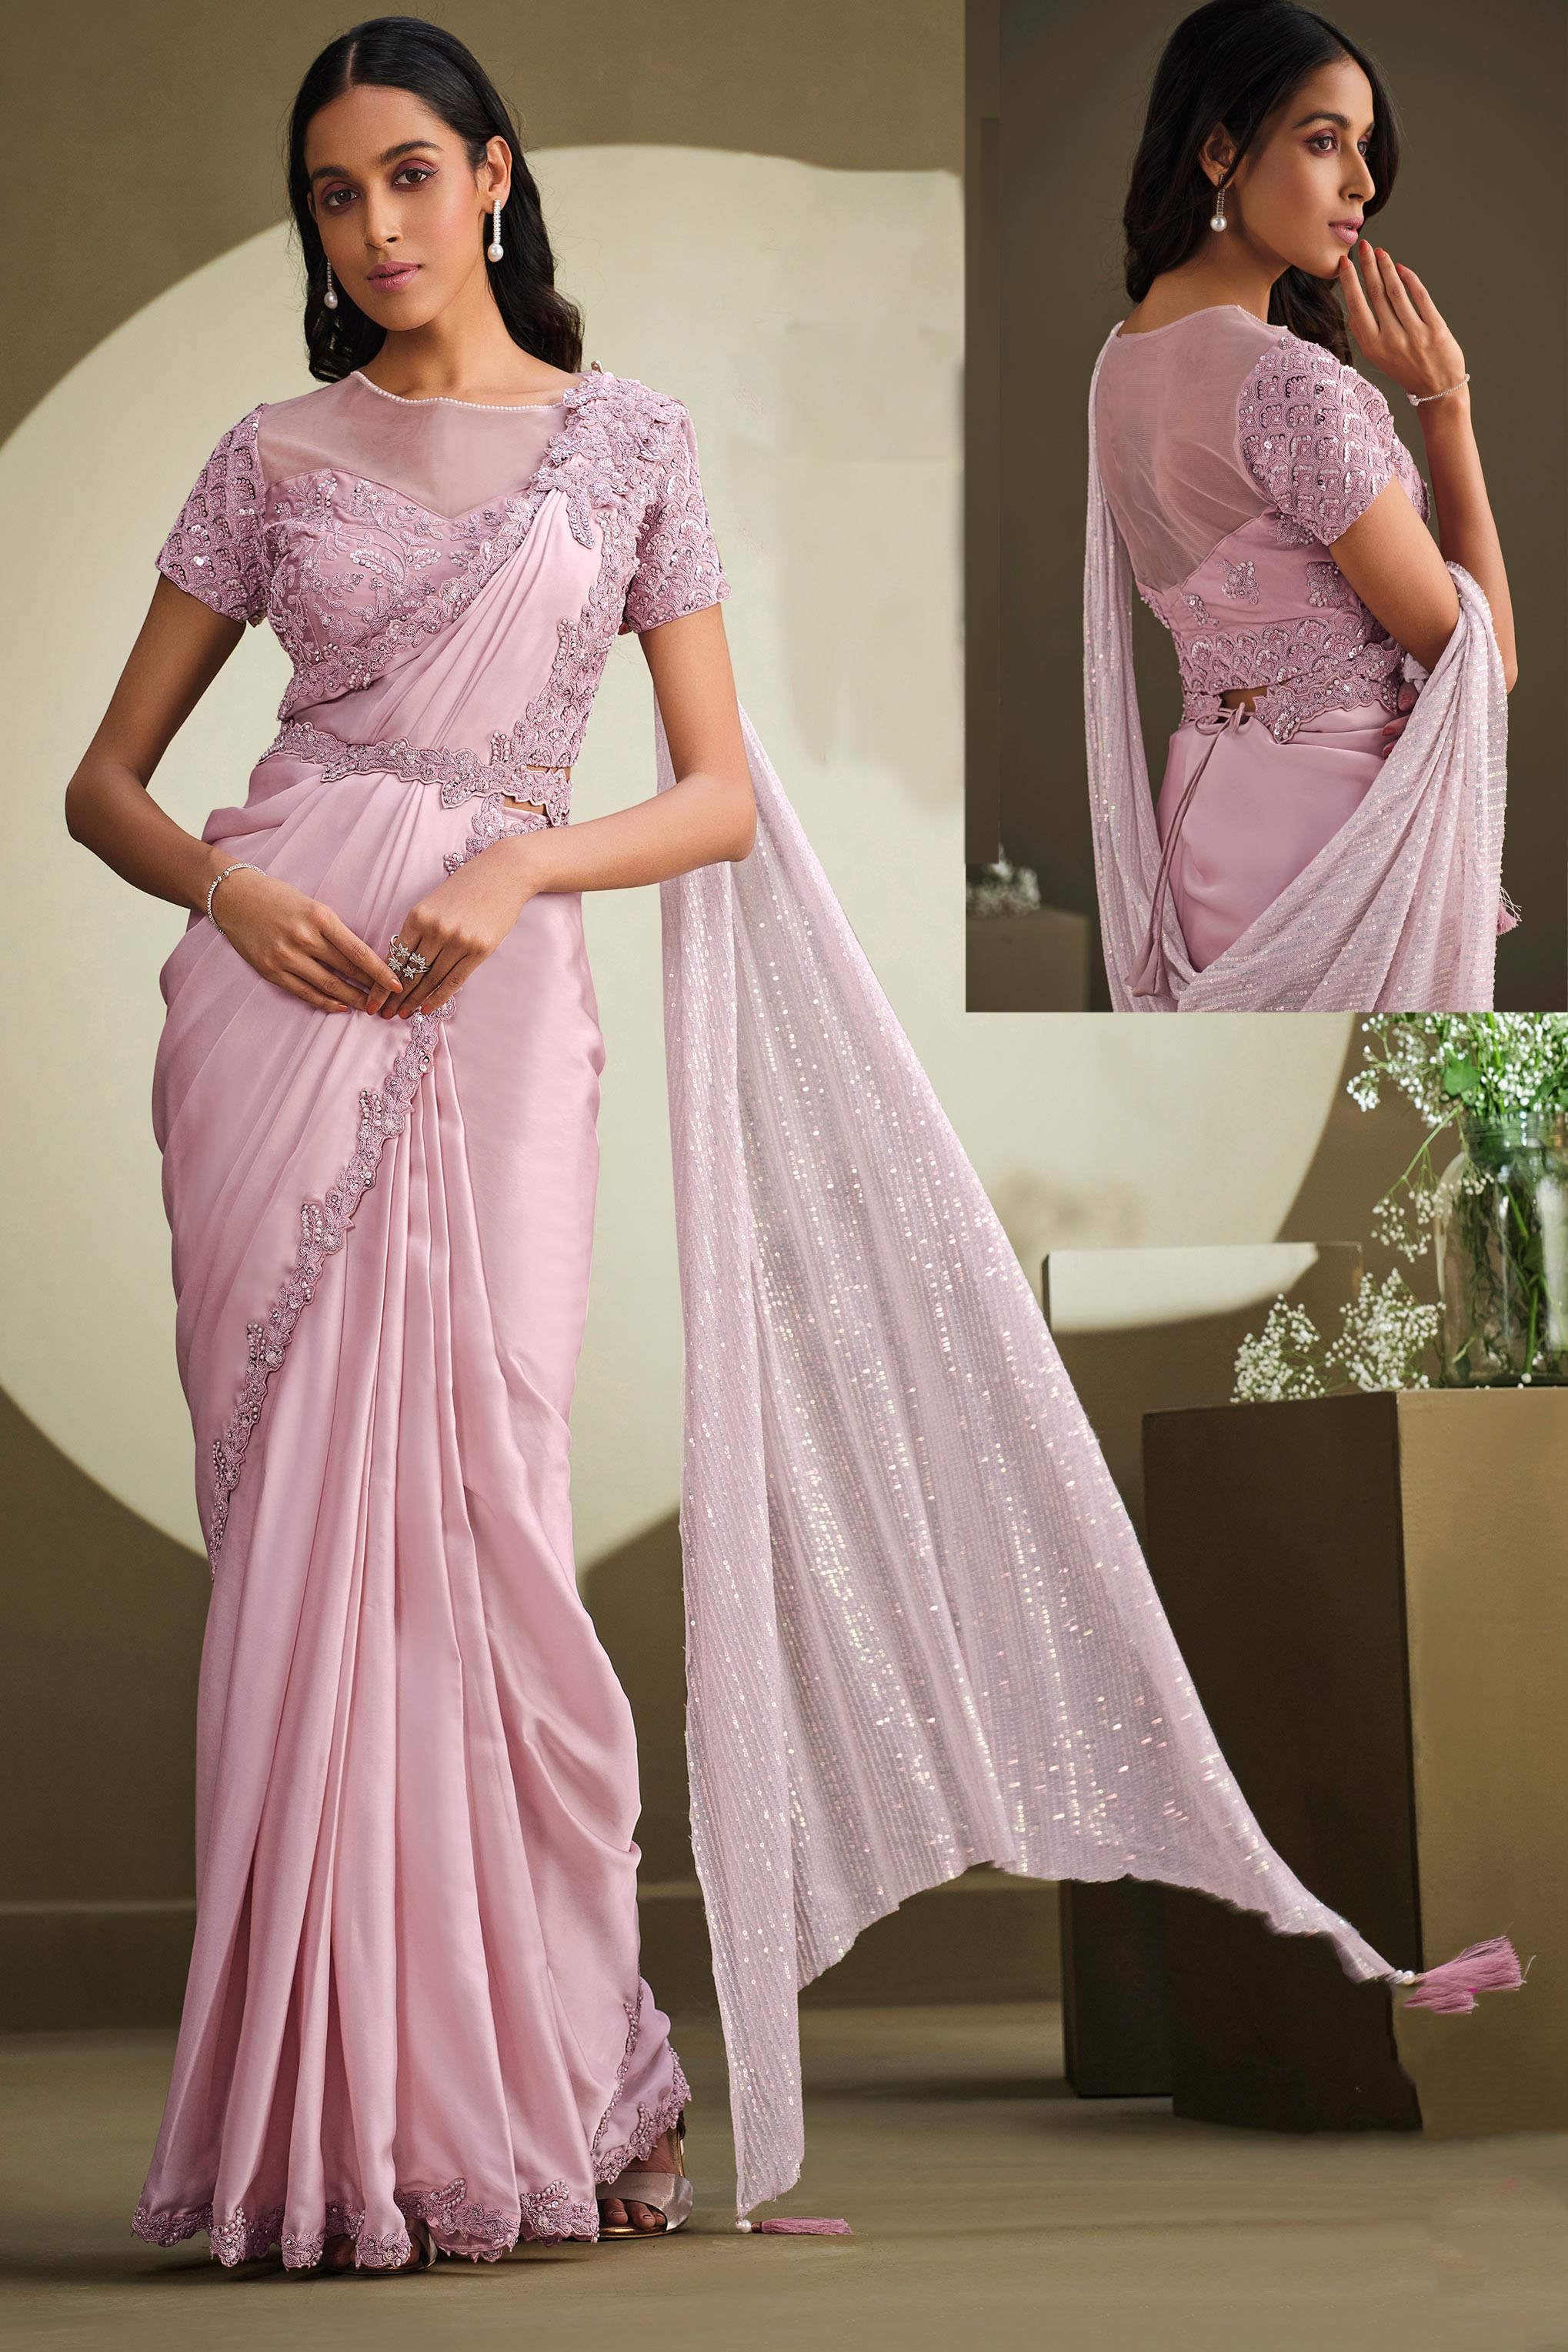 Readymade saree | ready to wear saree online ₹1800 | i Buy From India